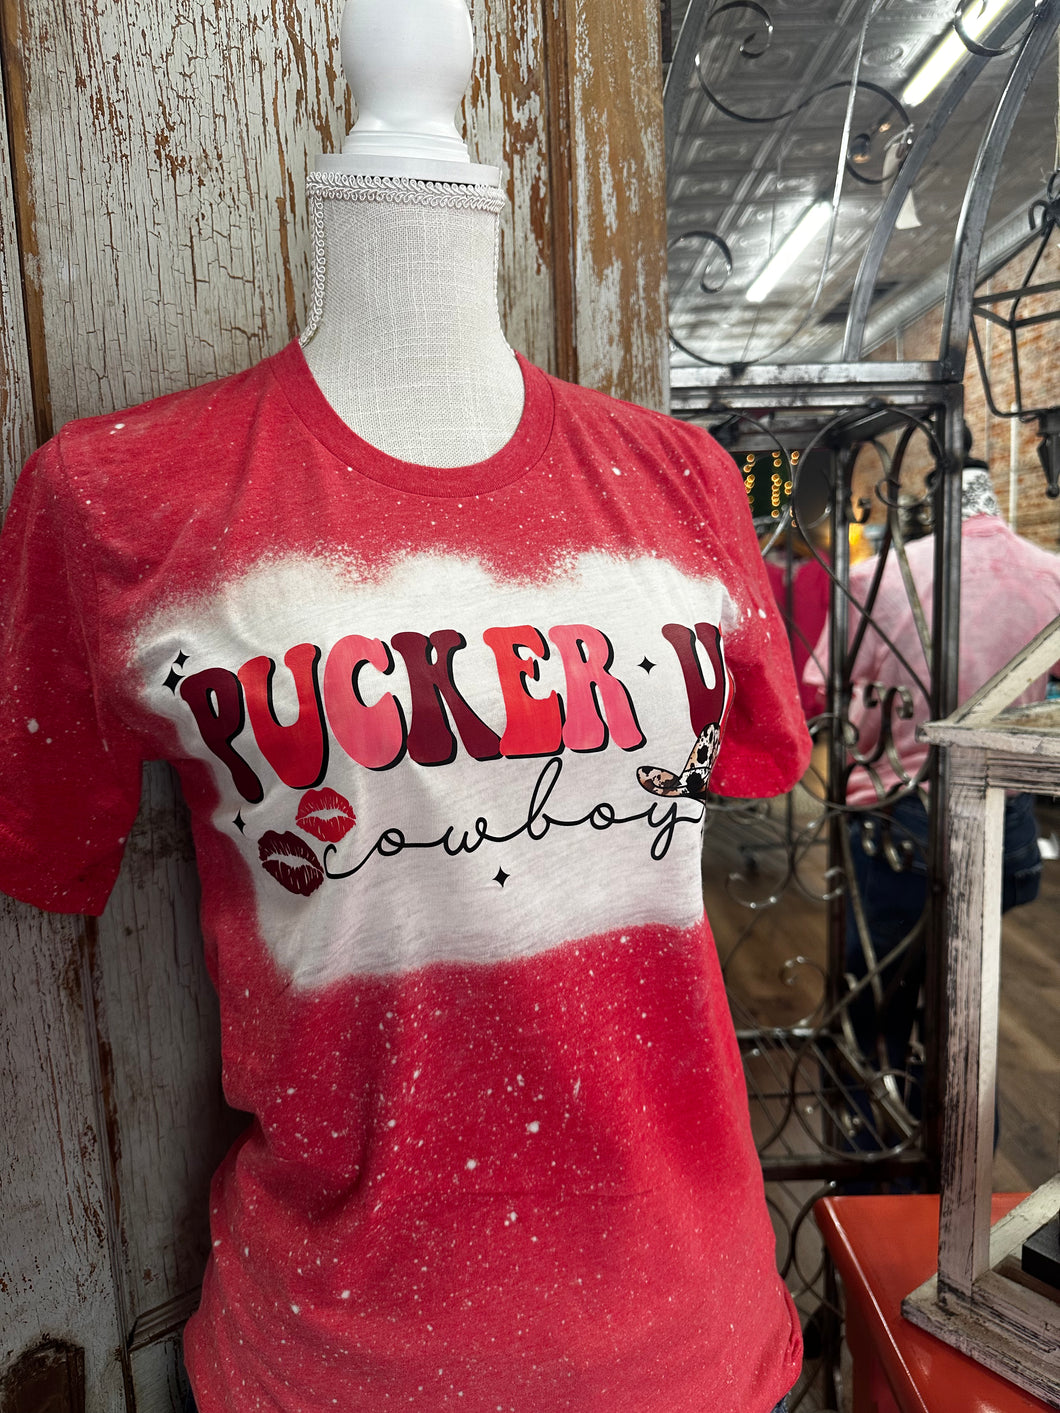 Pucker Up Cowboy Graphic Teeshirt